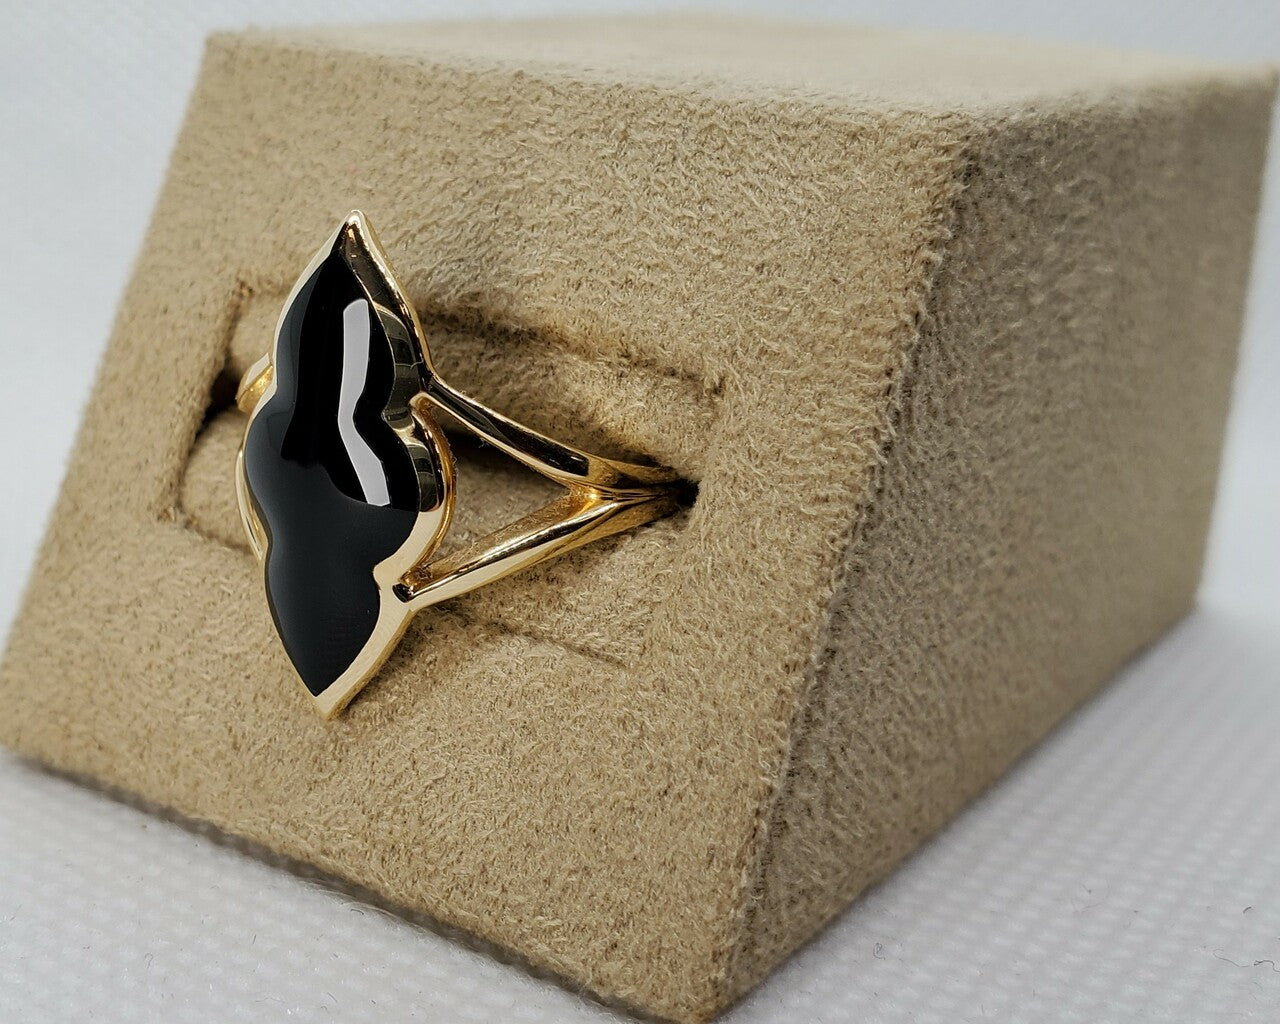 Kabana Scalloped black onyx ring